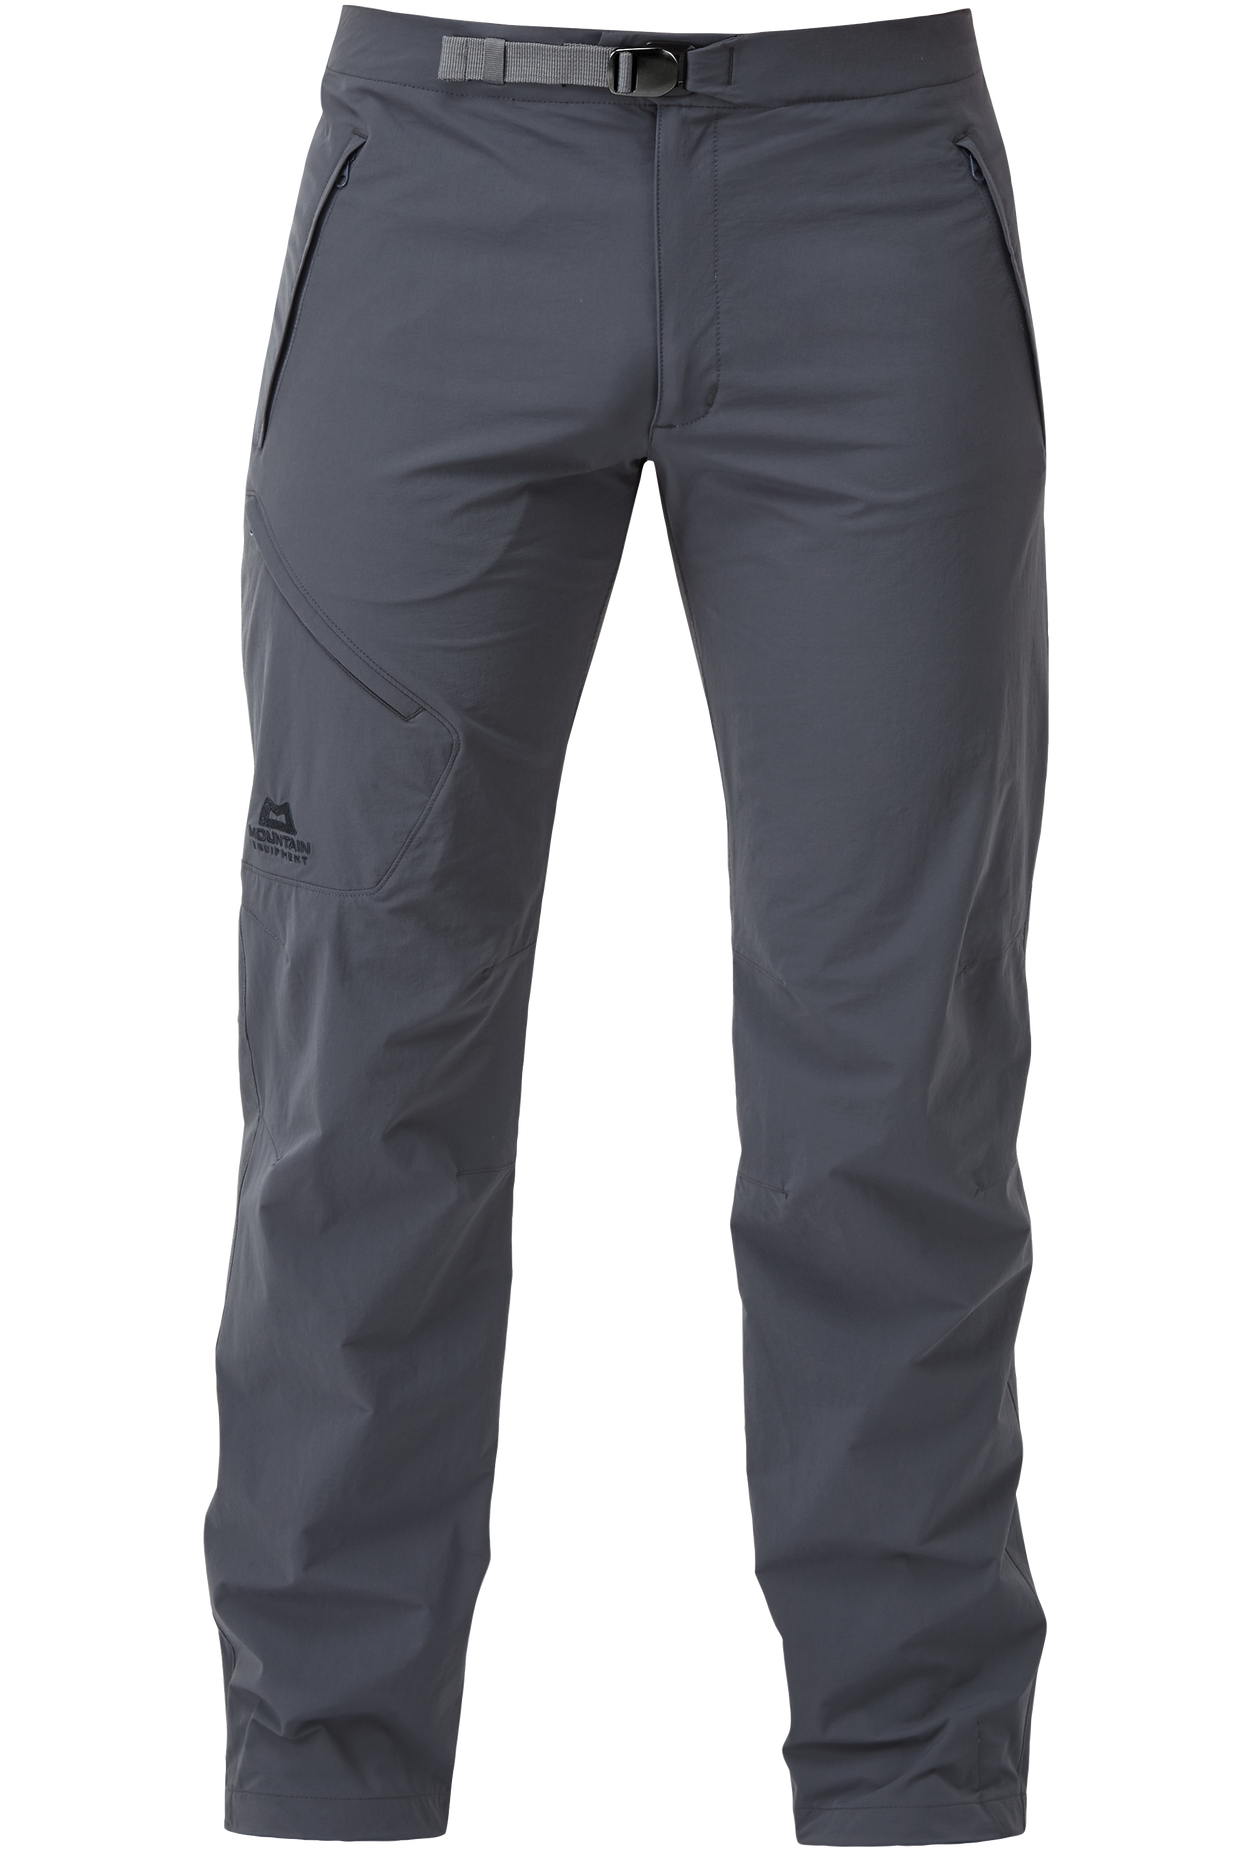 Mountain Equipment pánské softshellové kalhoty Comici Pant - prodloužené Barva: Ombre Blue, Velikost: 30/S